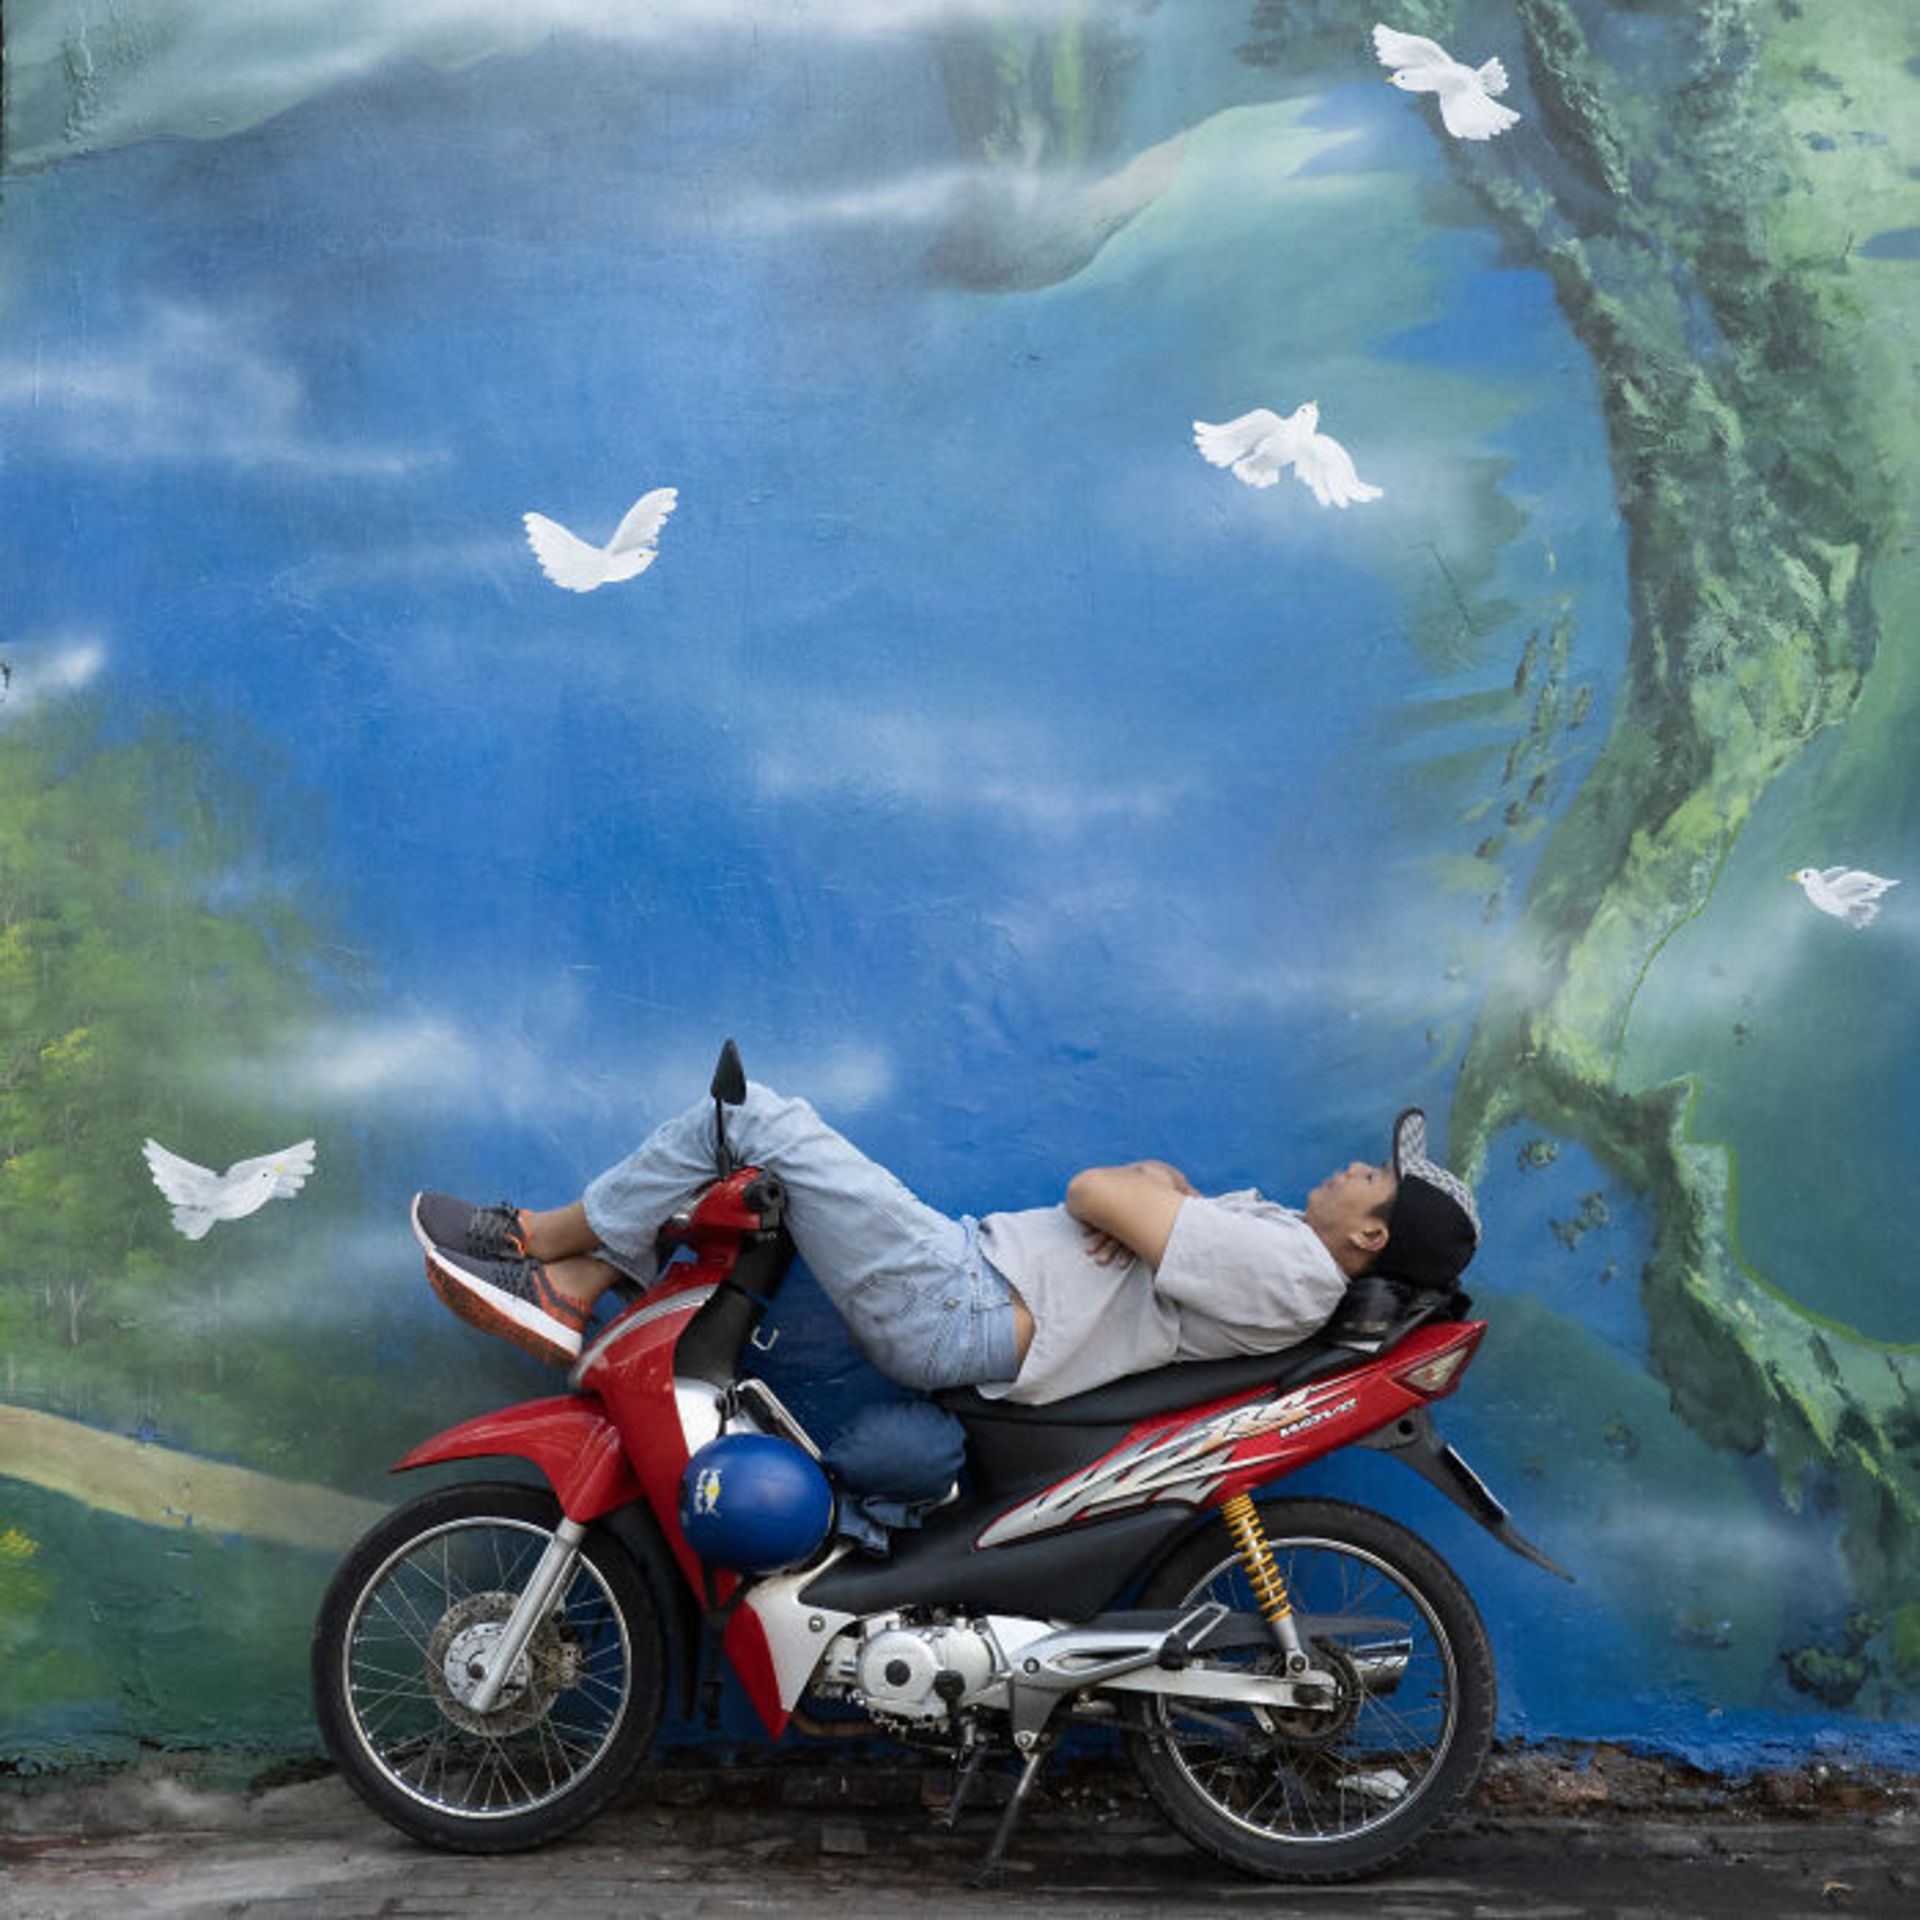 مرد خوابیده روی موتورسیکلت